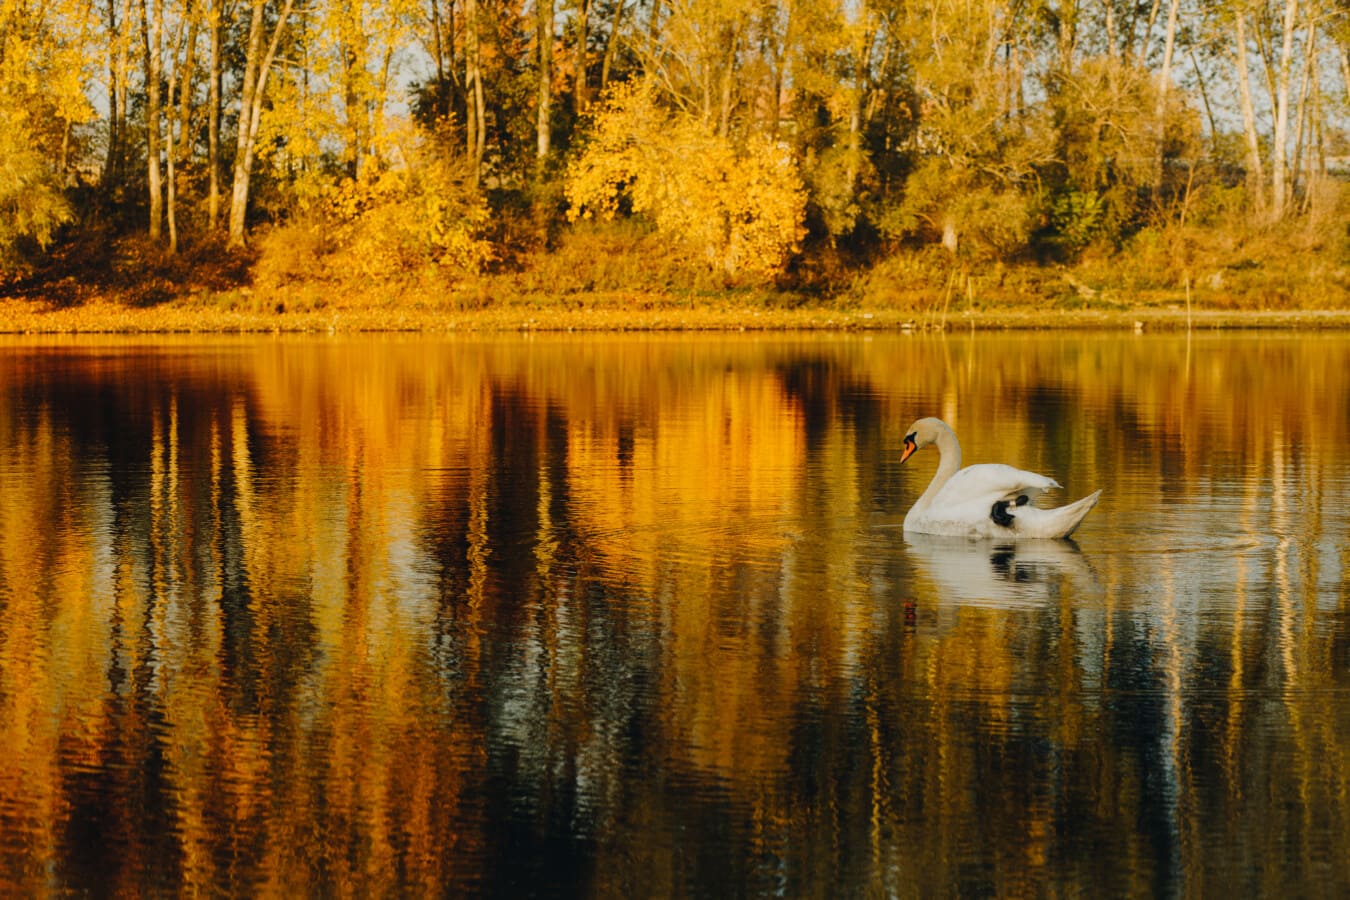 Cigno, autunno, lago, colori, giallo arancio, bagliore dorato, orizzontale, riflessione, acqua, alberi